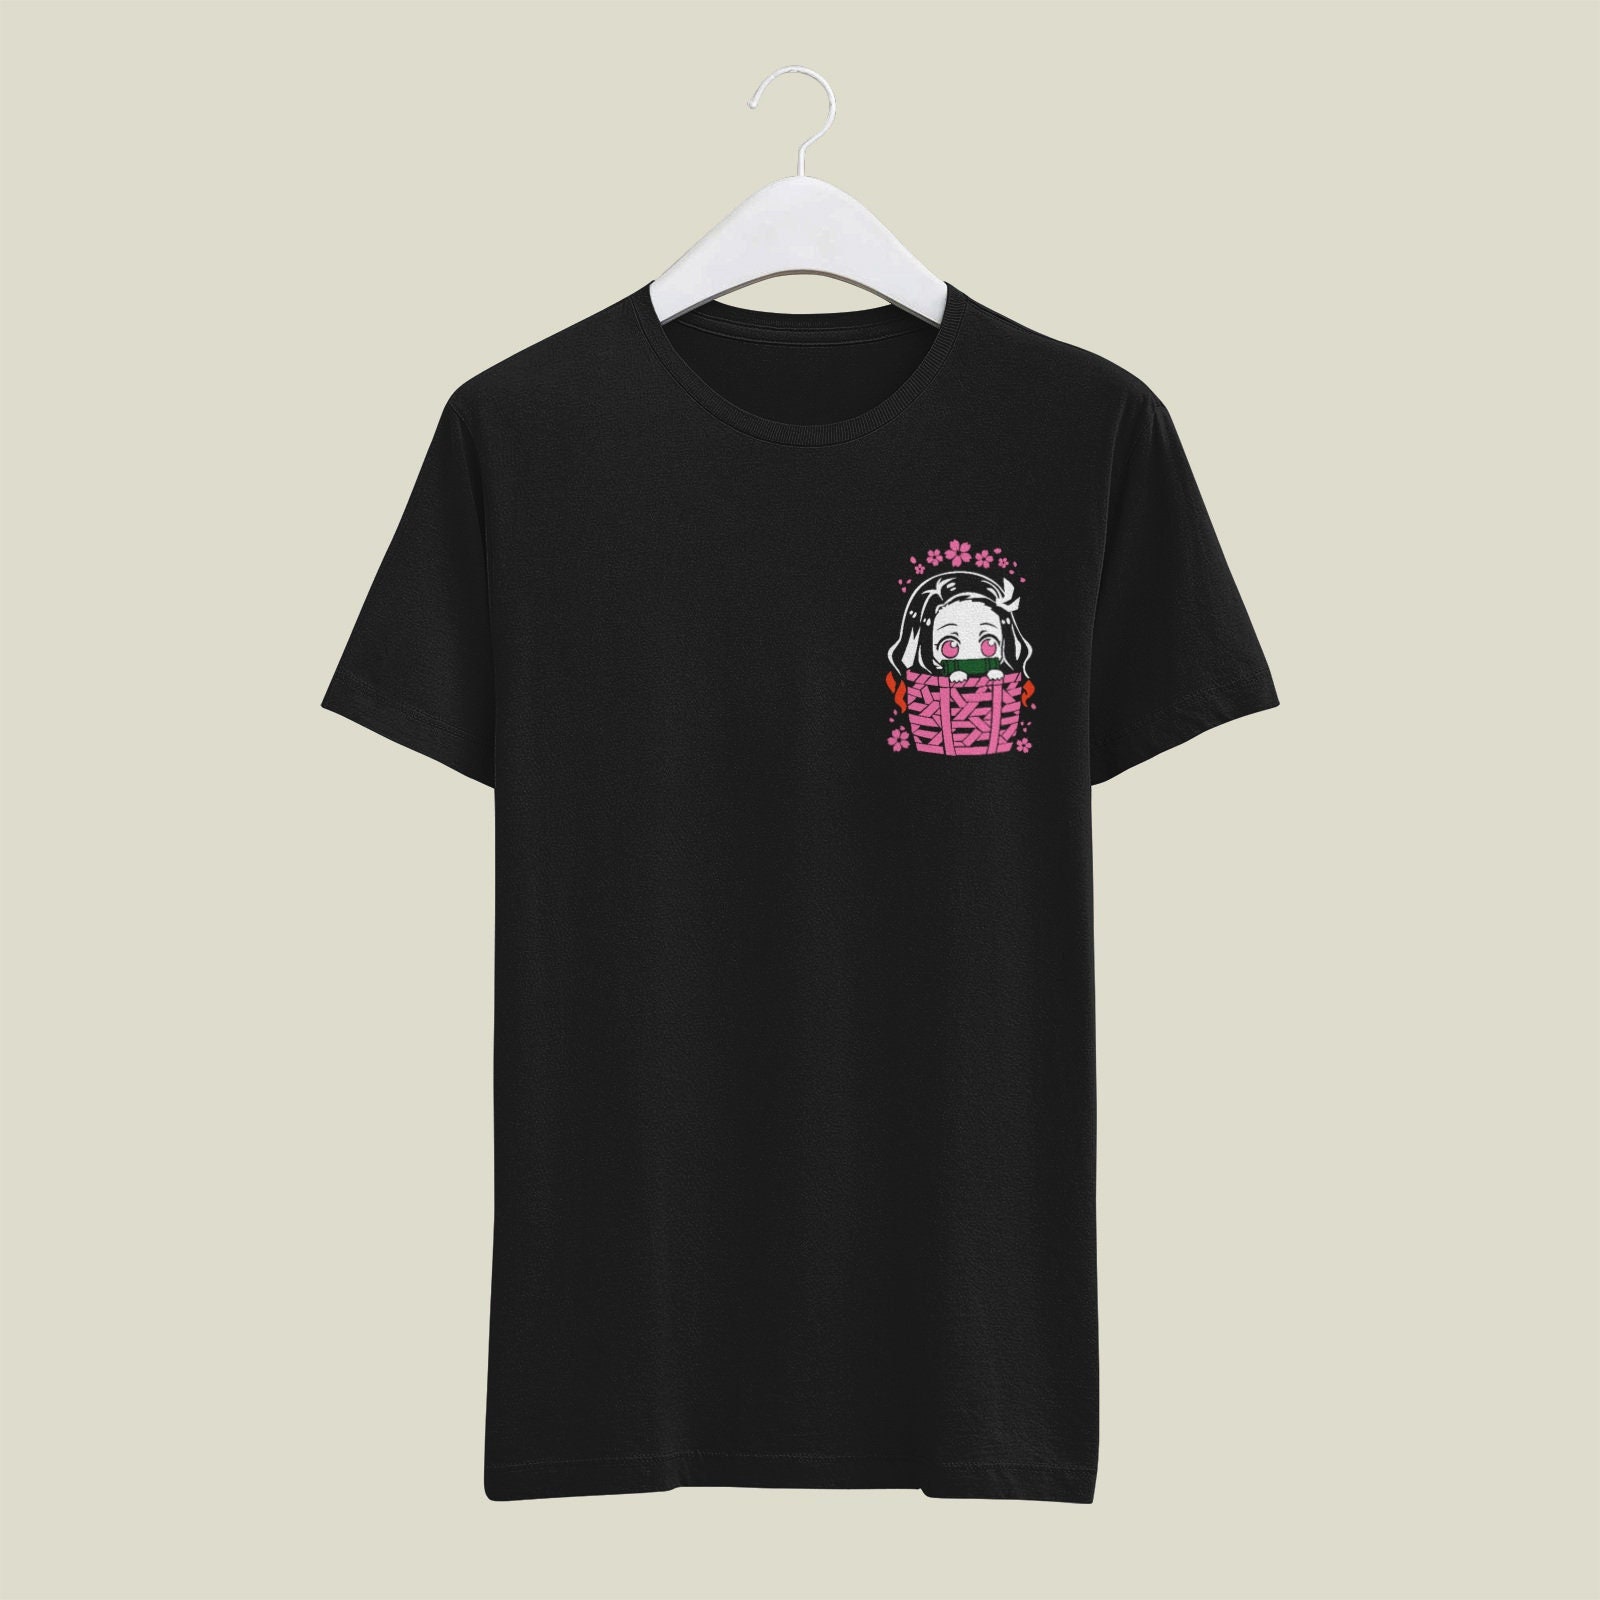 Yato Noragami Anime Tshirt for Sale by noureddineyahya  Redbubble  yato  tshirts  noragami tshirts  god tshirts